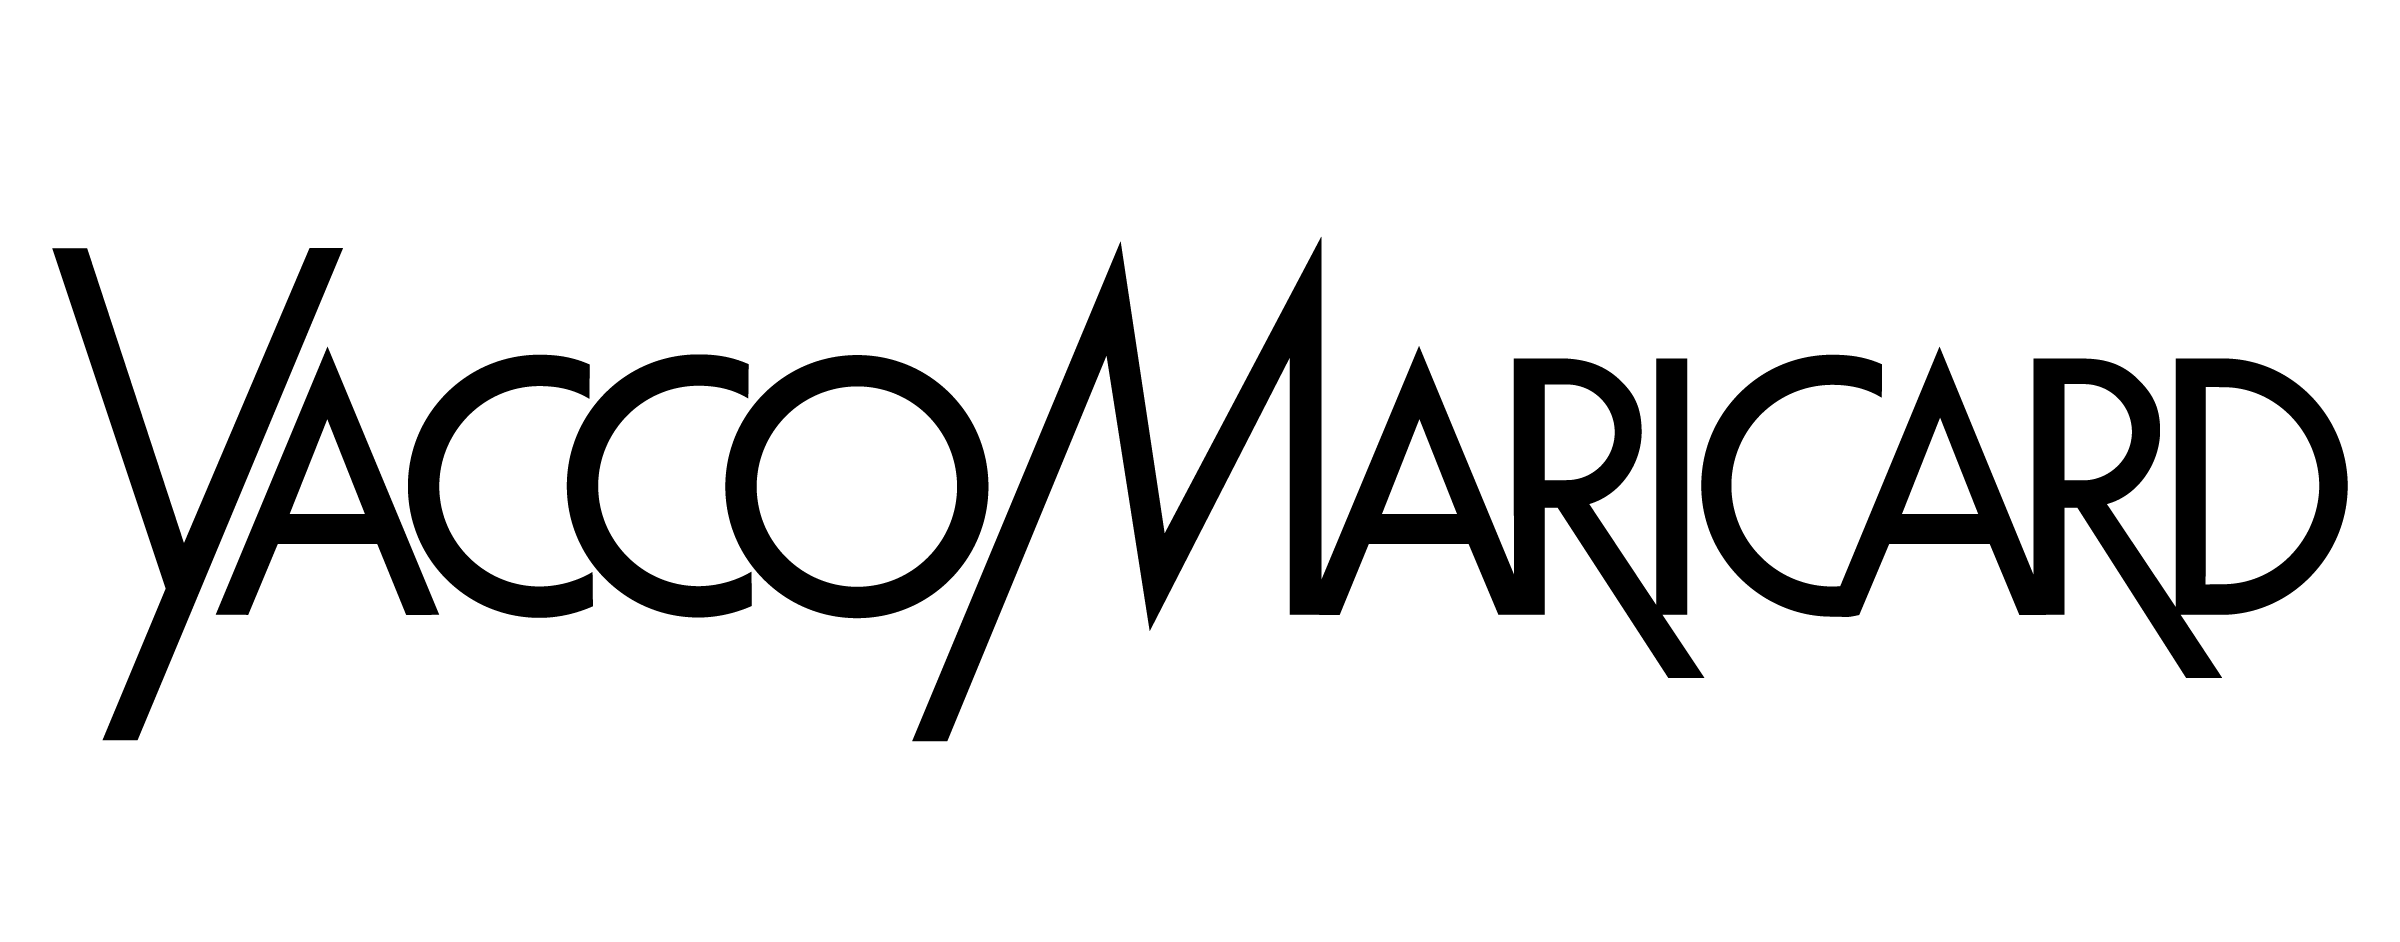 Shakastyle logo